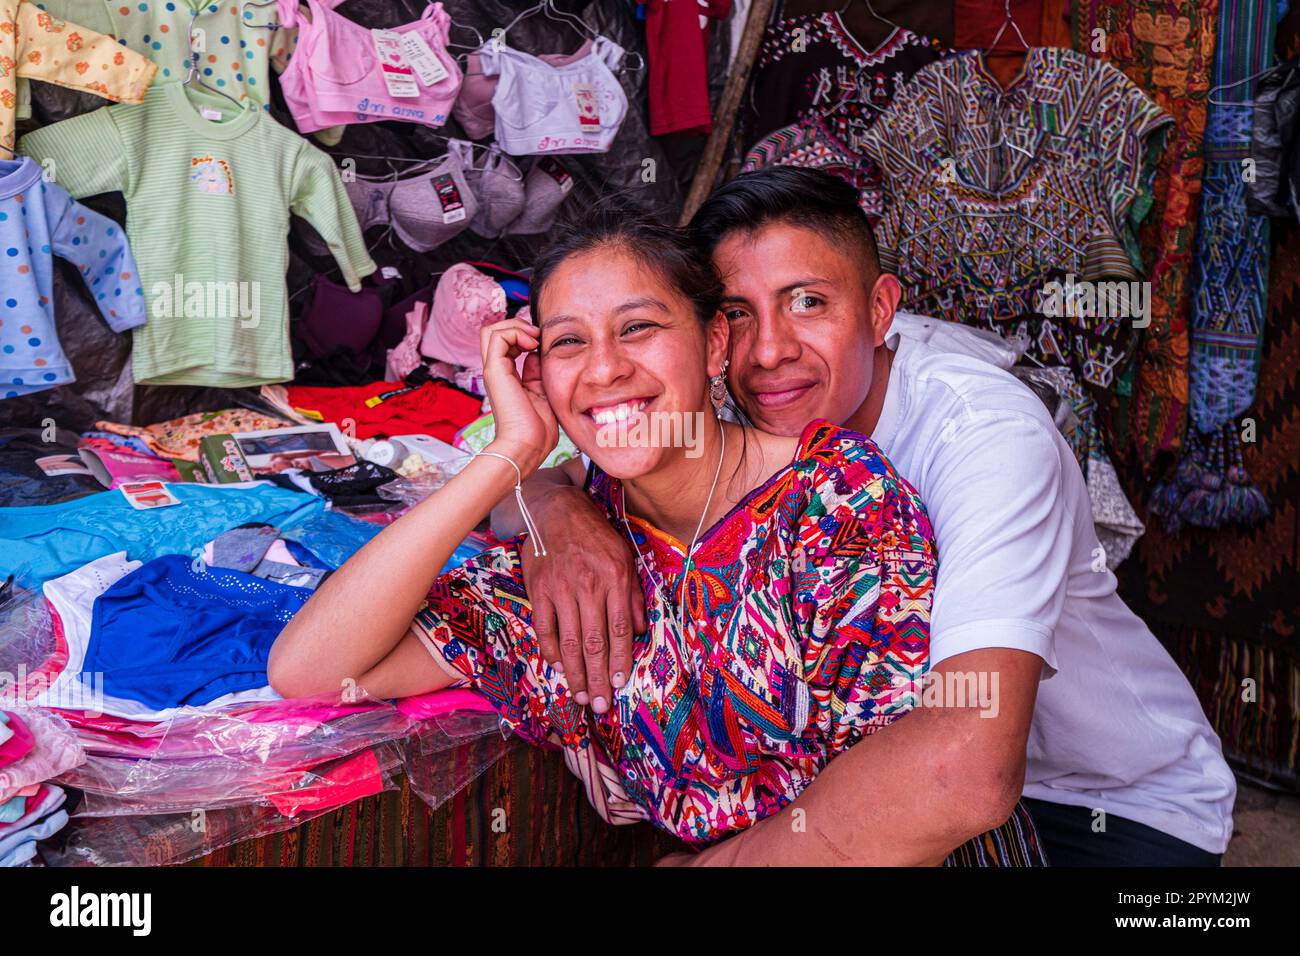 mercado tradicional, Chichicastenango, Quiché, Guatemala, America Central Stock Photo